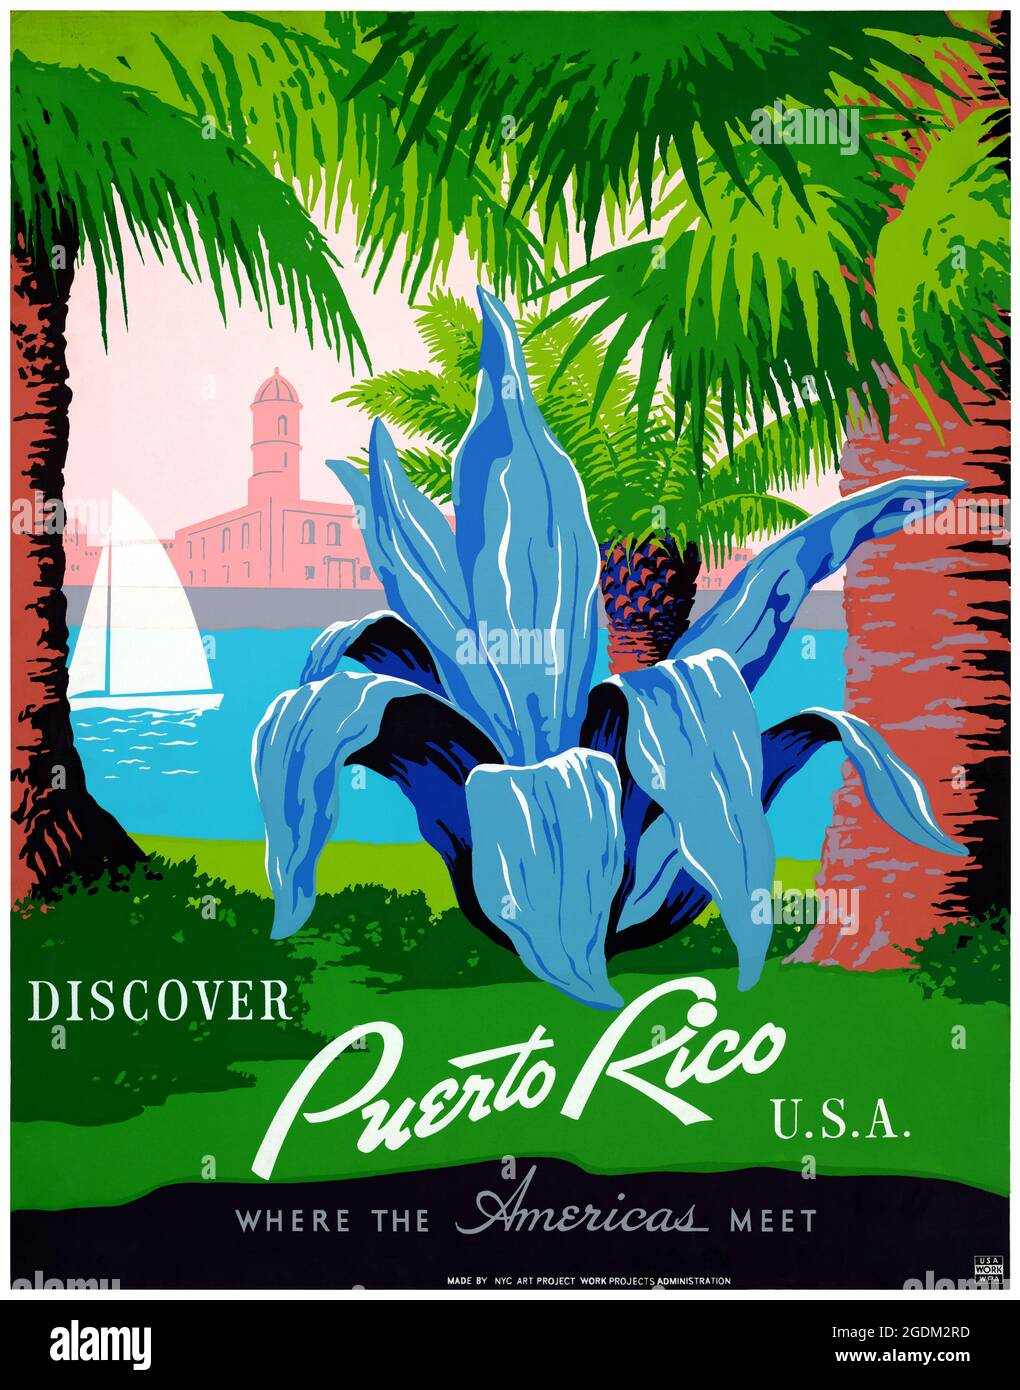 Entdecken Sie Puerto Rico, USA, wo Amerika zusammenkommt von Frank S. Nicholson (Daten unbekannt). Restauriertes Vintage-WPA-Poster, das in den 1940er Jahren in den USA veröffentlicht wurde. Stockfoto